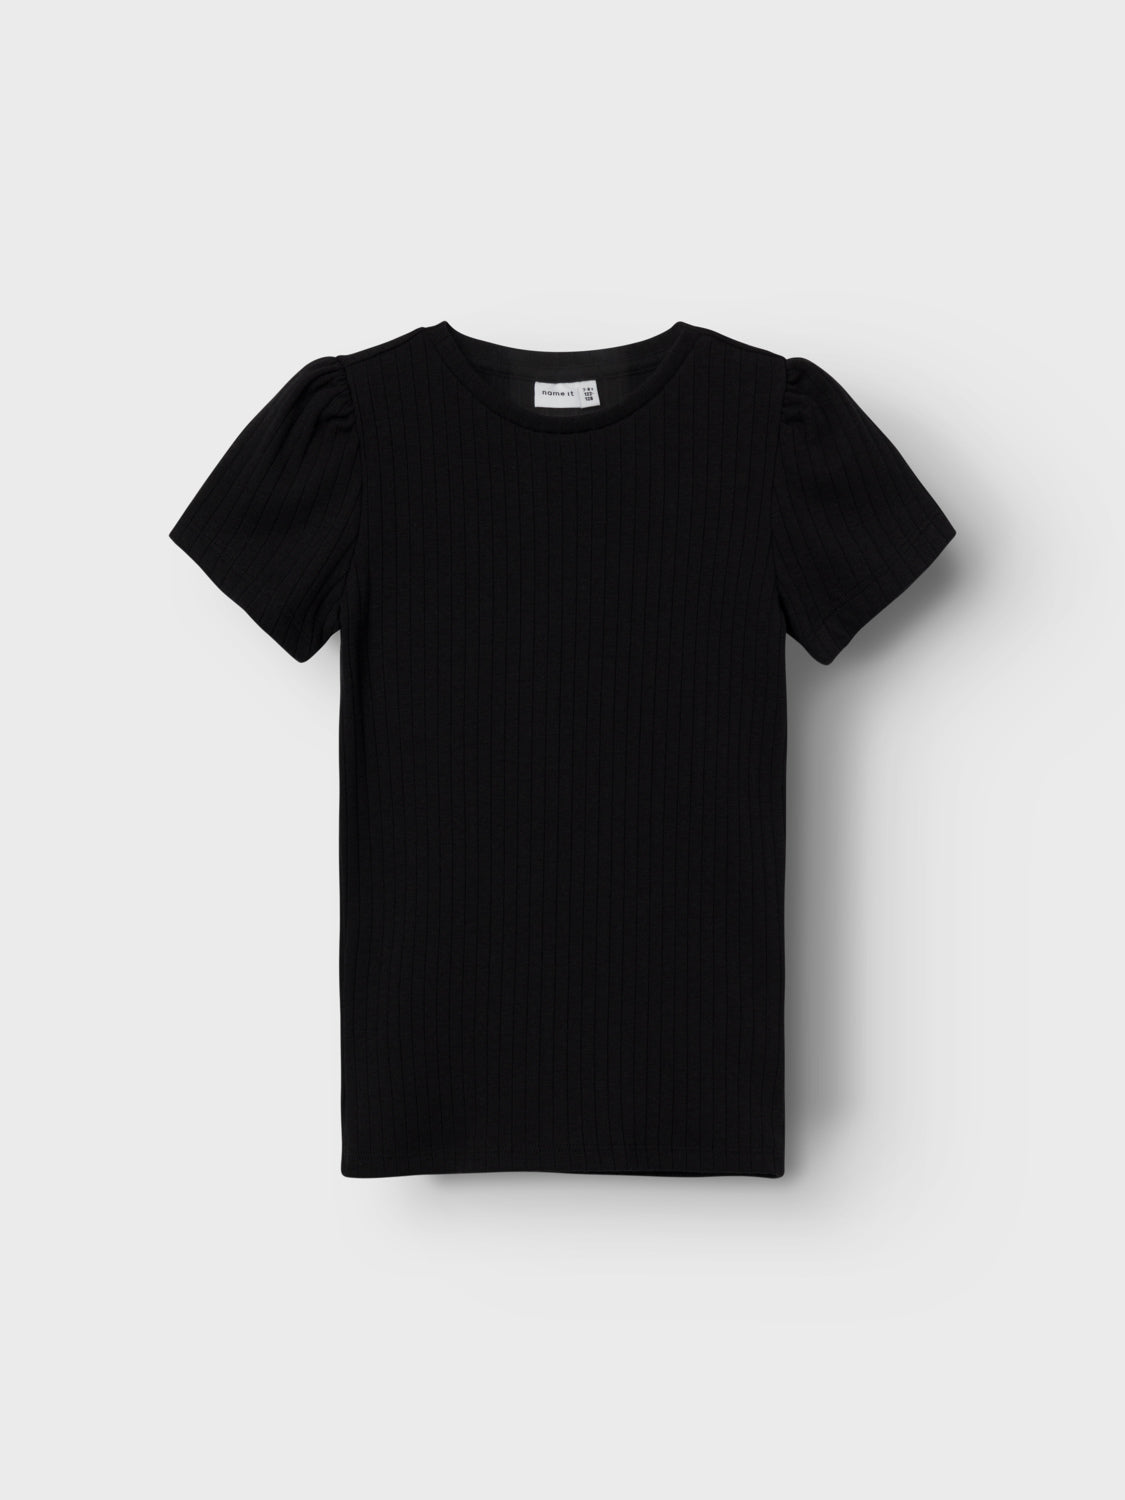 NKFNAJAA T-Shirts & Tops - Black